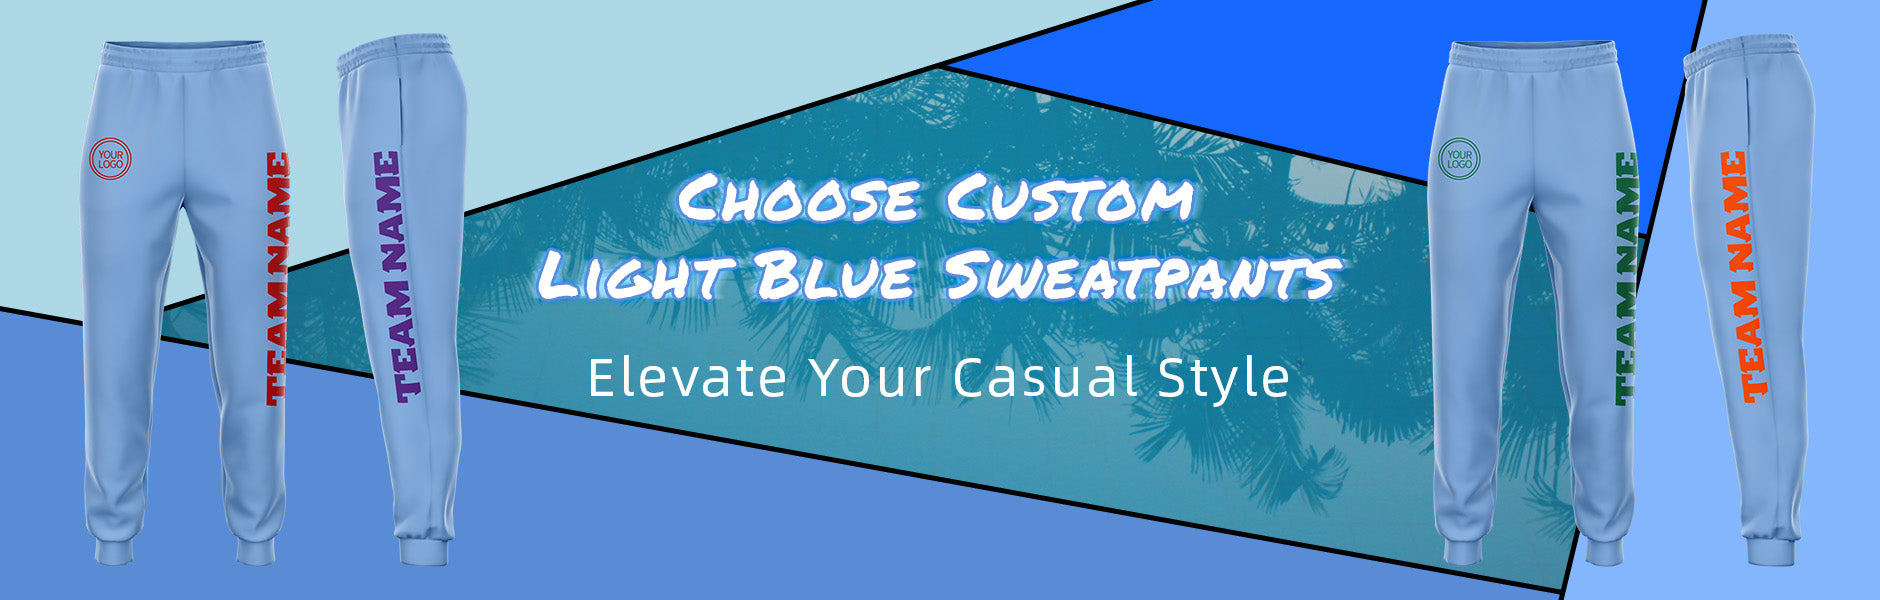 custom light blue sweatpants